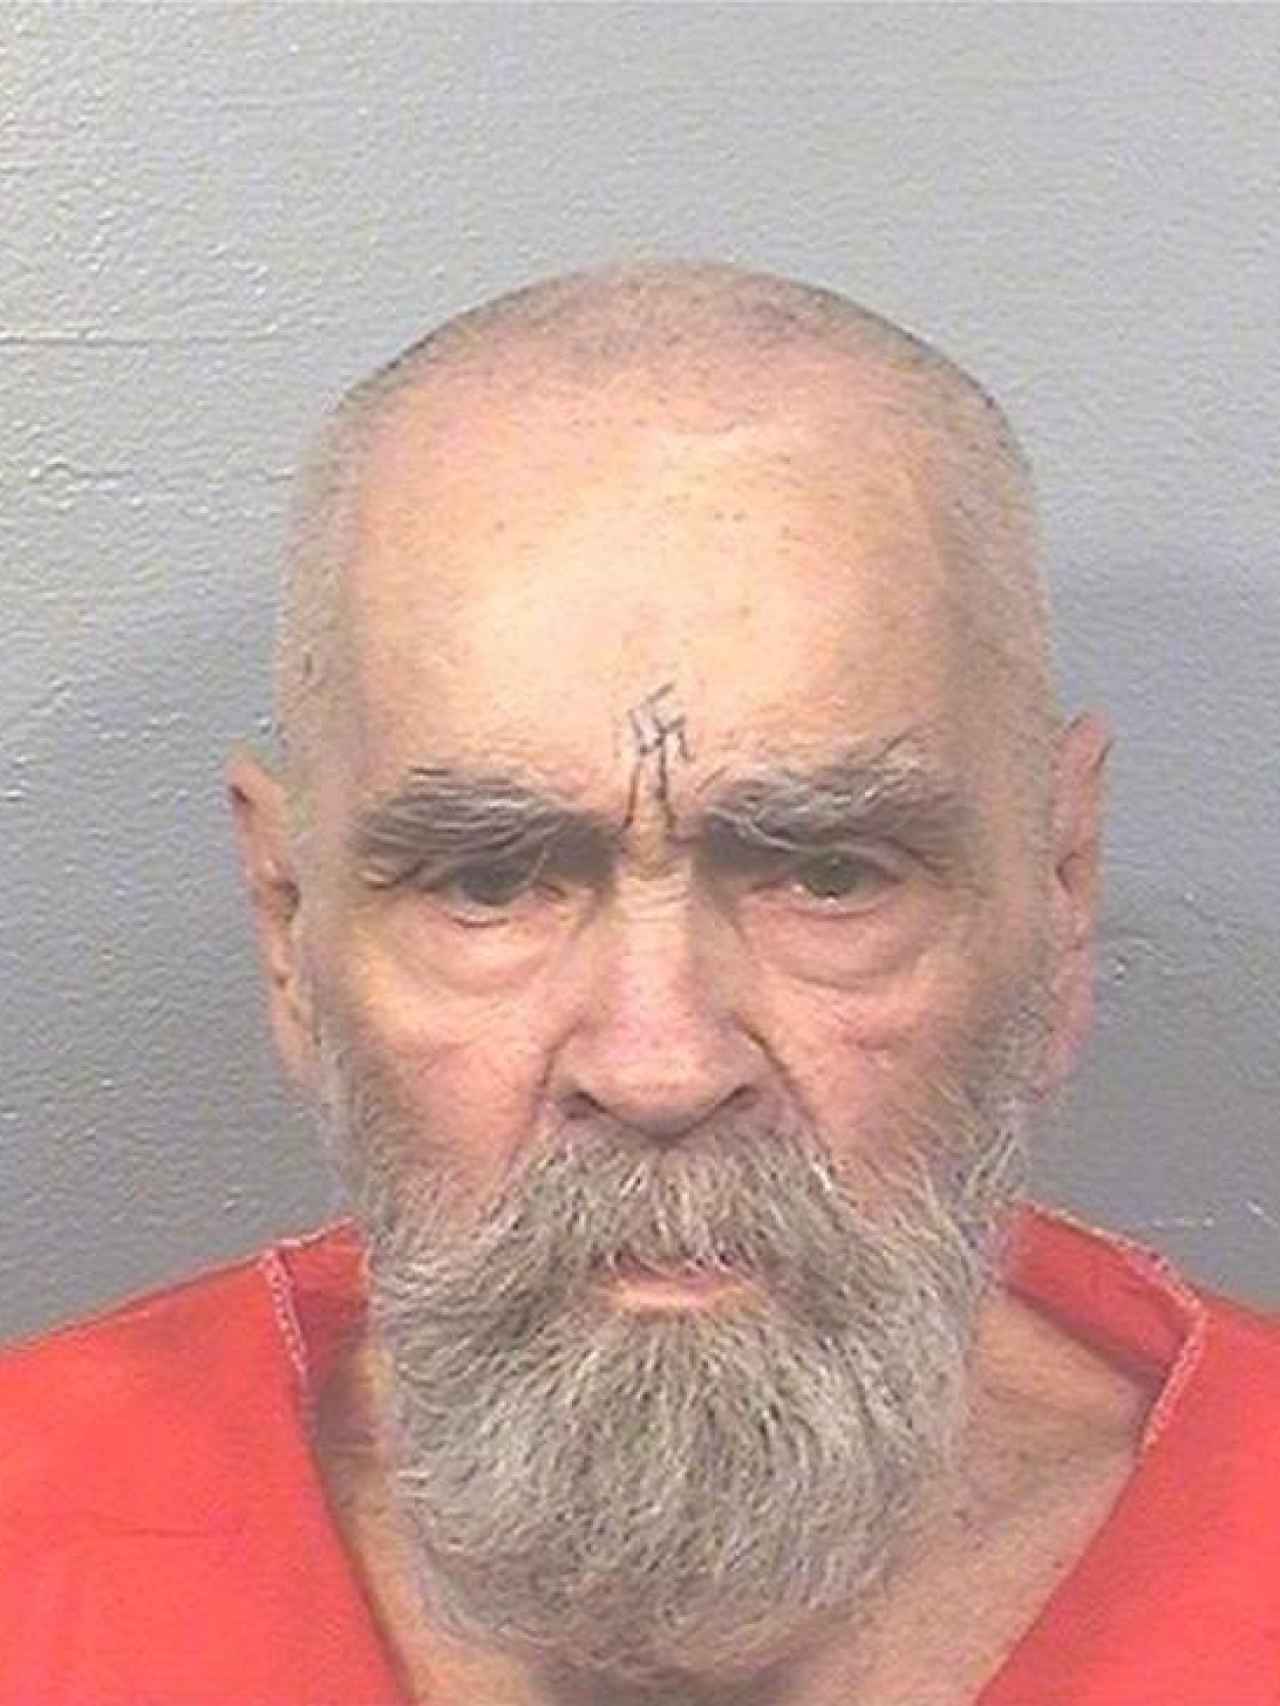 Charles Manson, en prisión.